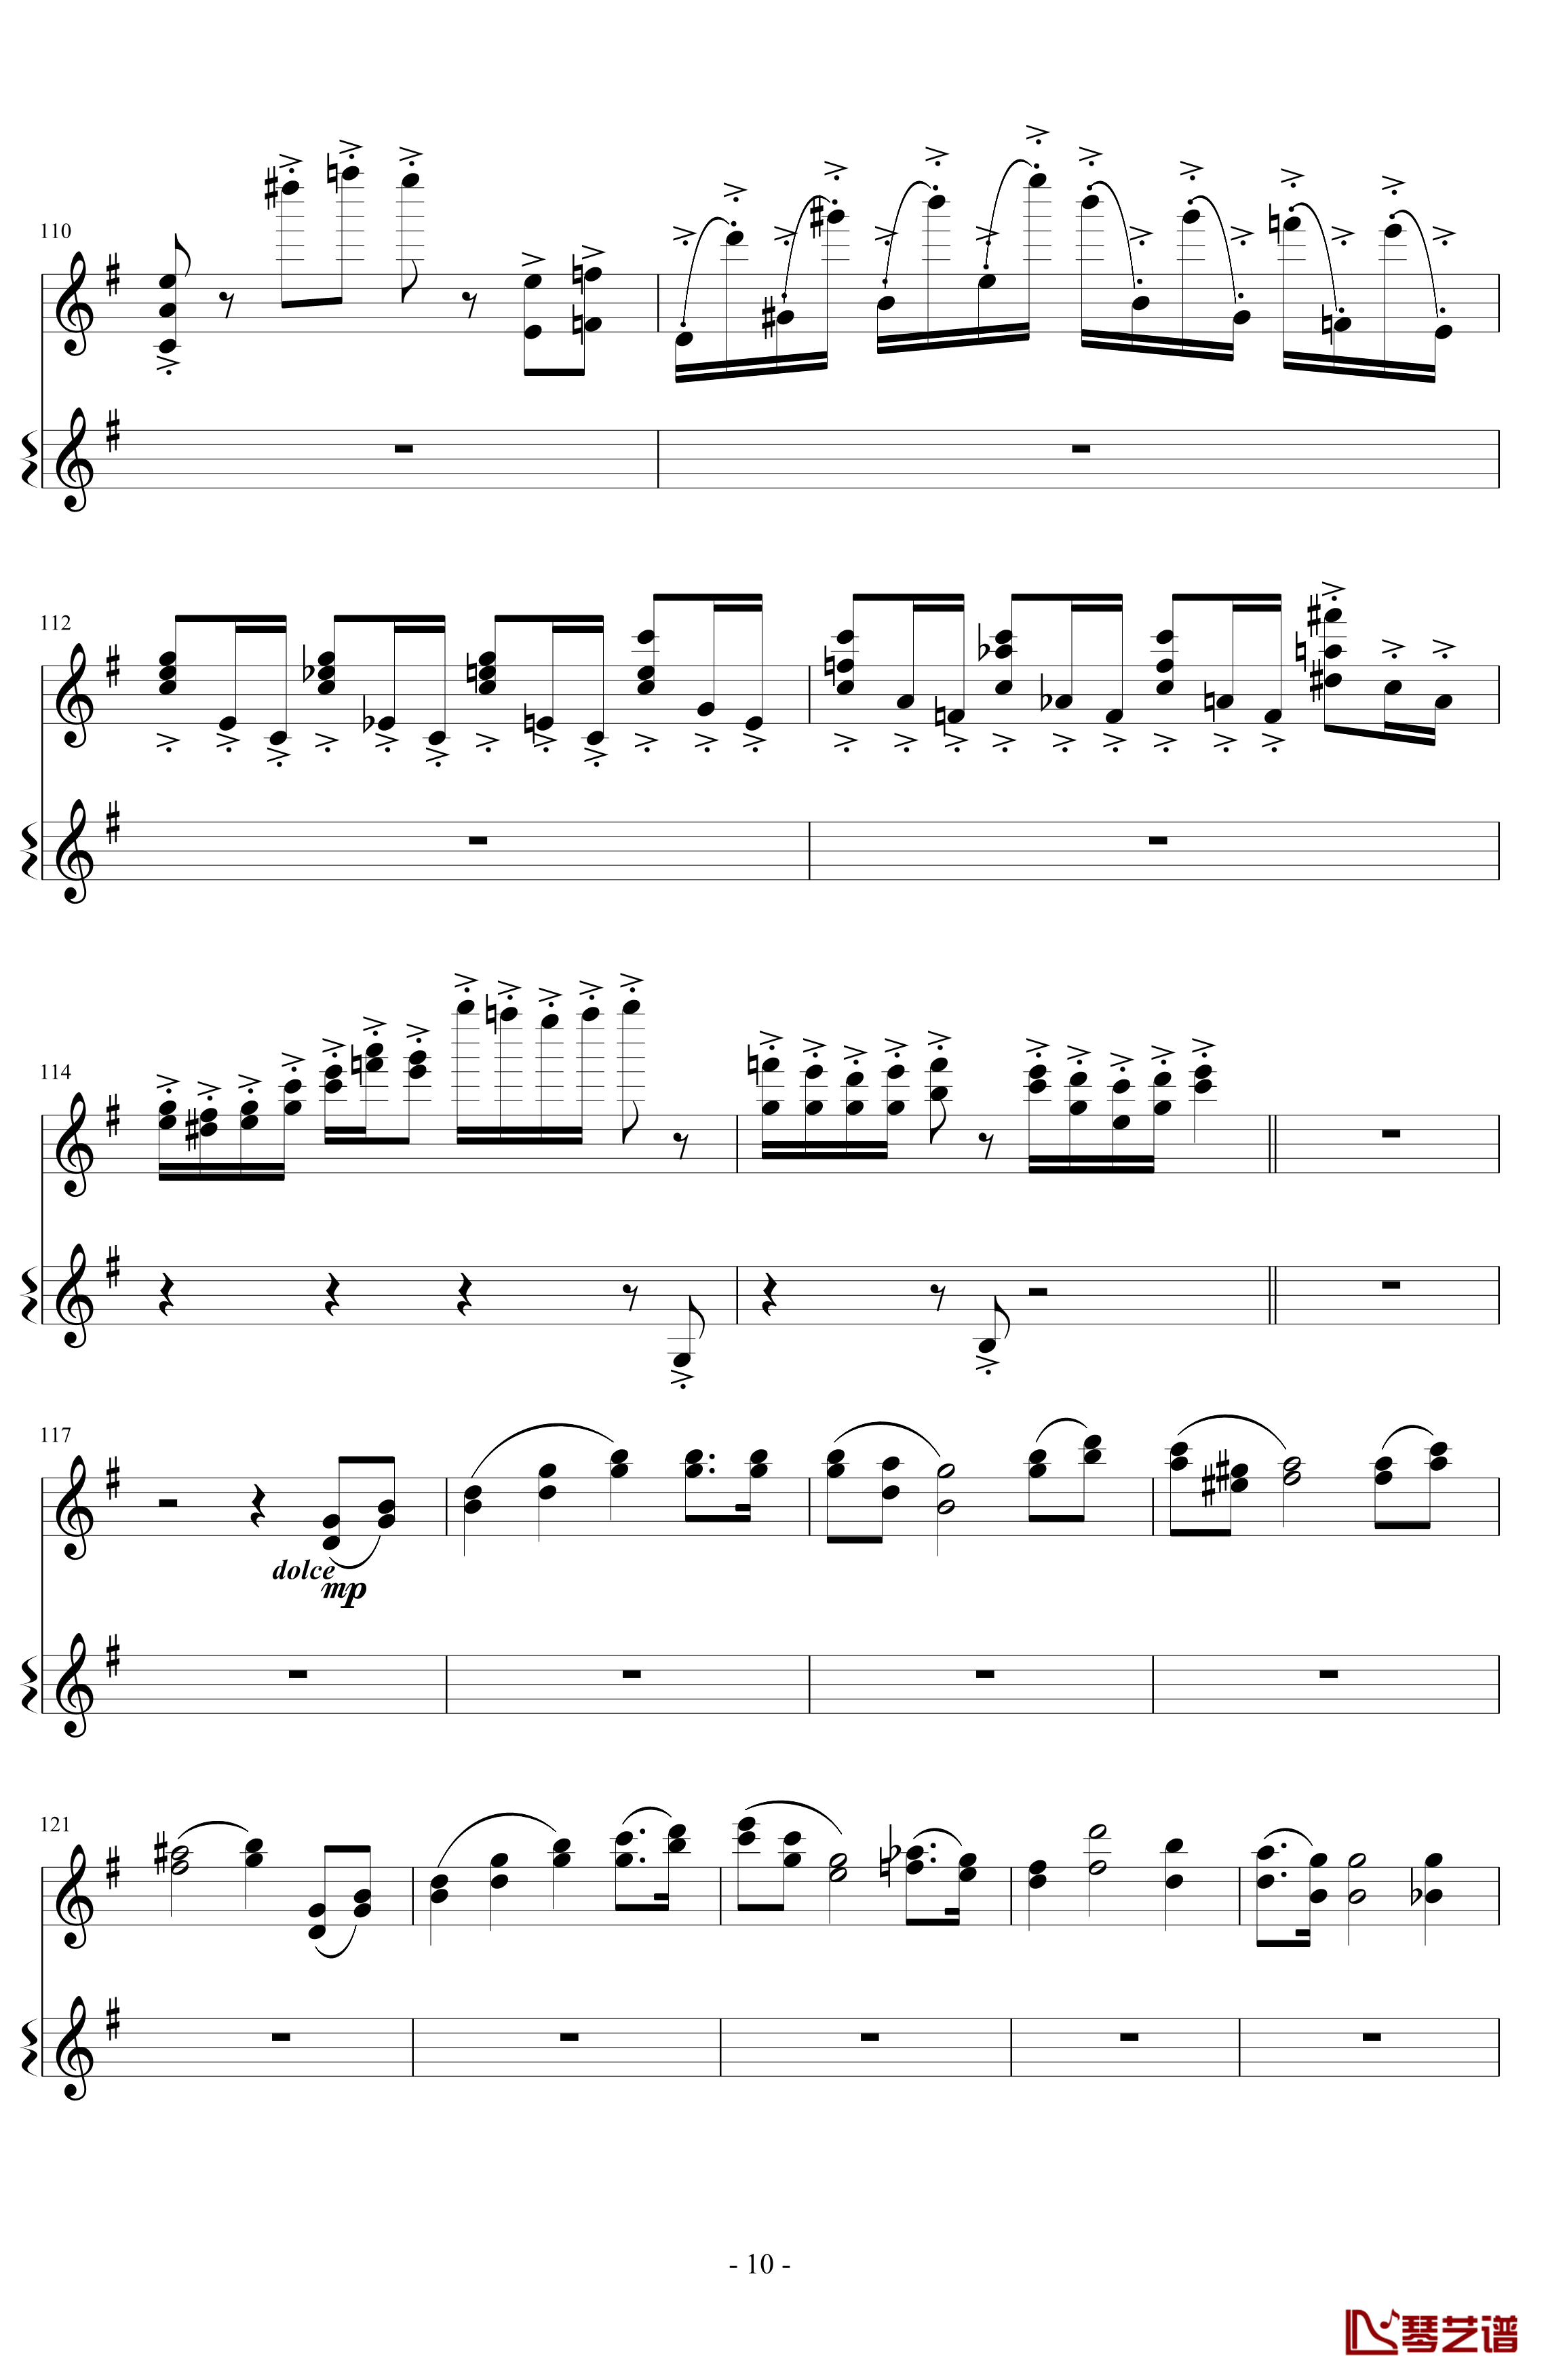 意大利国歌变奏曲钢琴谱-DXF10